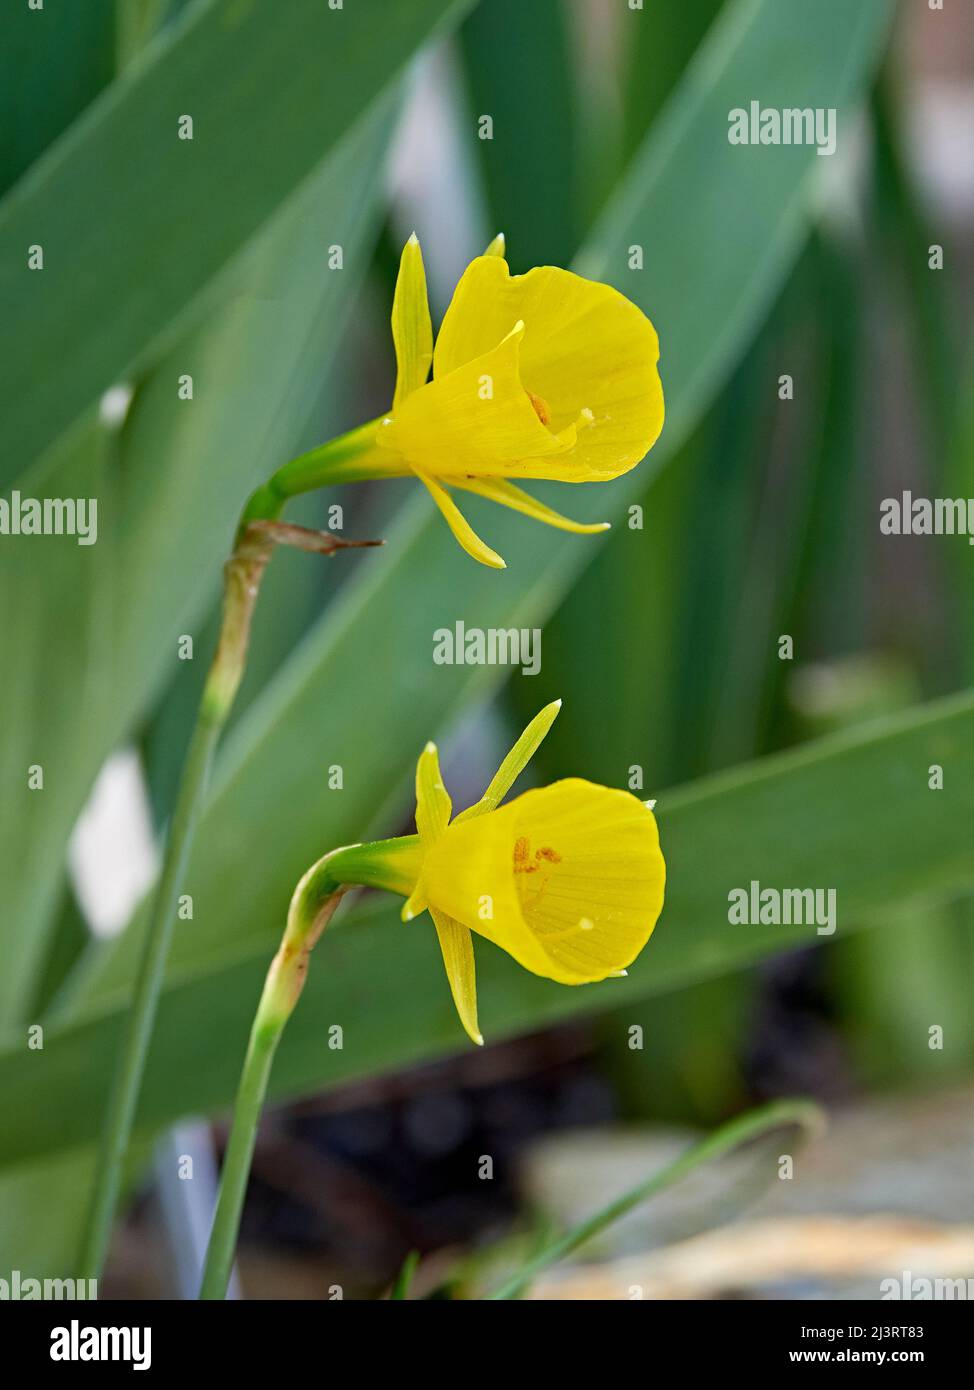 Gelb gespaltene Narzissen oder Petticoat-Narzissen werden auch als Schmetterling-Narzissen bezeichnet, die in einem Hausgarten wachsen und blühen. Stockfoto